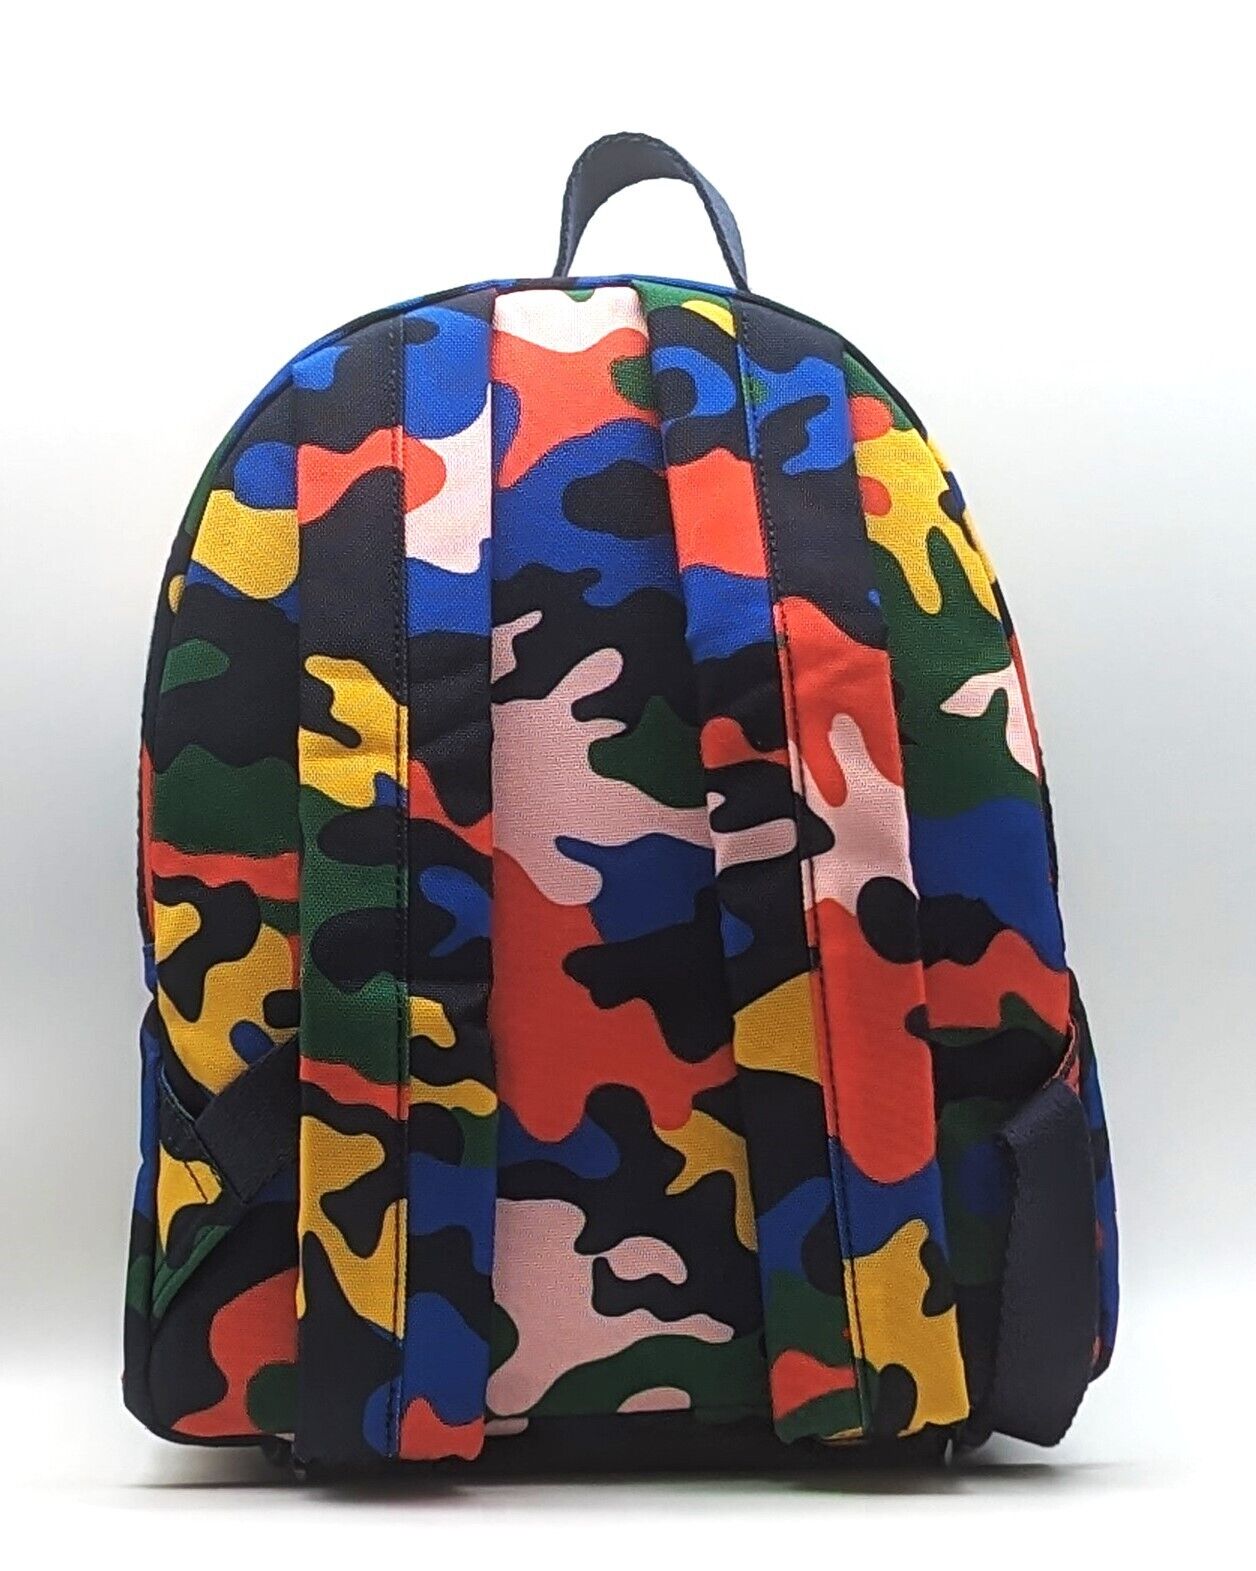 Gap Backpack Berkeley Camouflage RRP £39